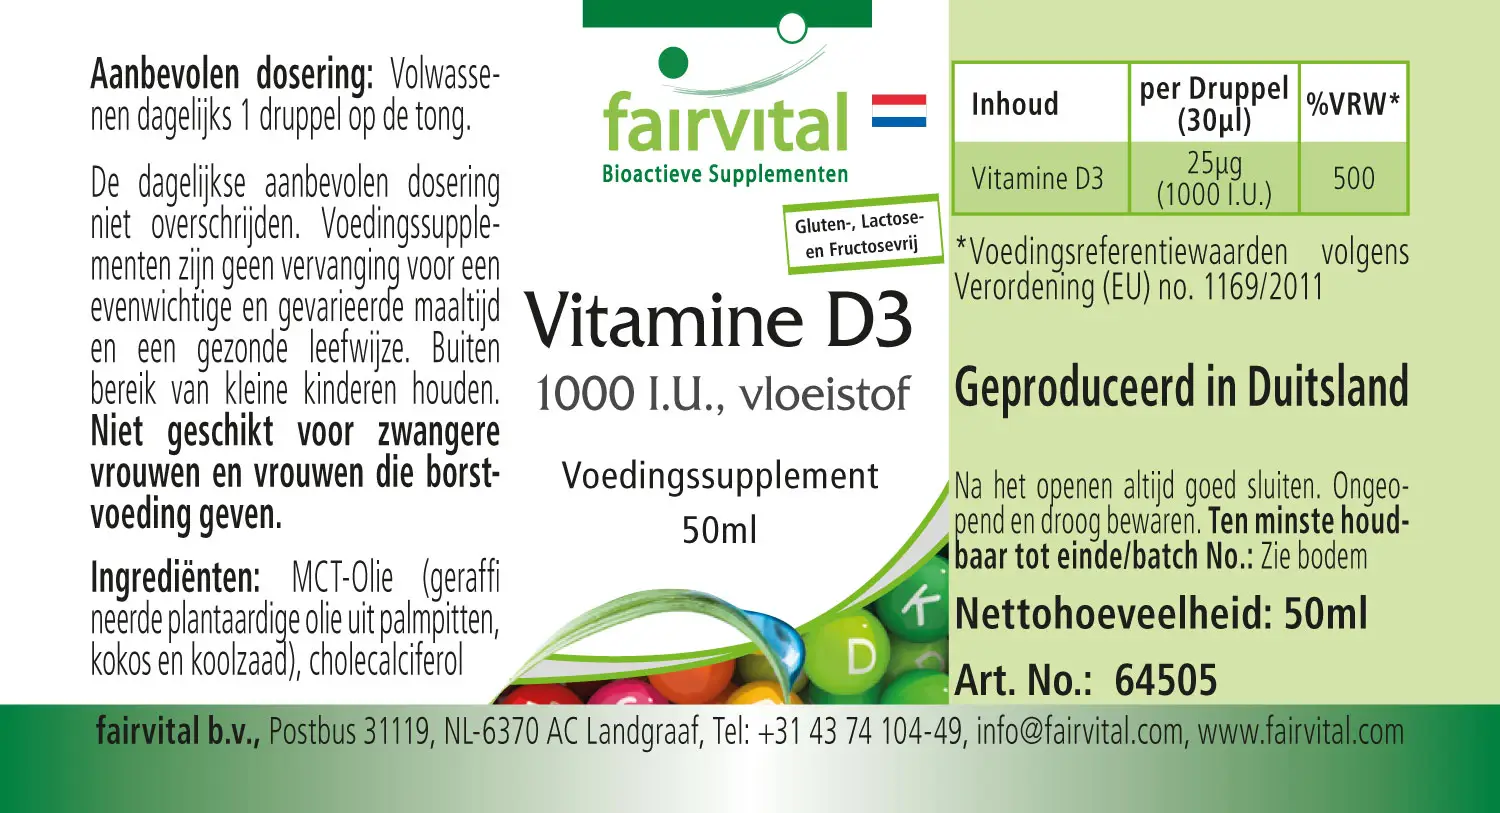 Vitamine D3 liquide - 1000 U.I. par goutte - 50ml